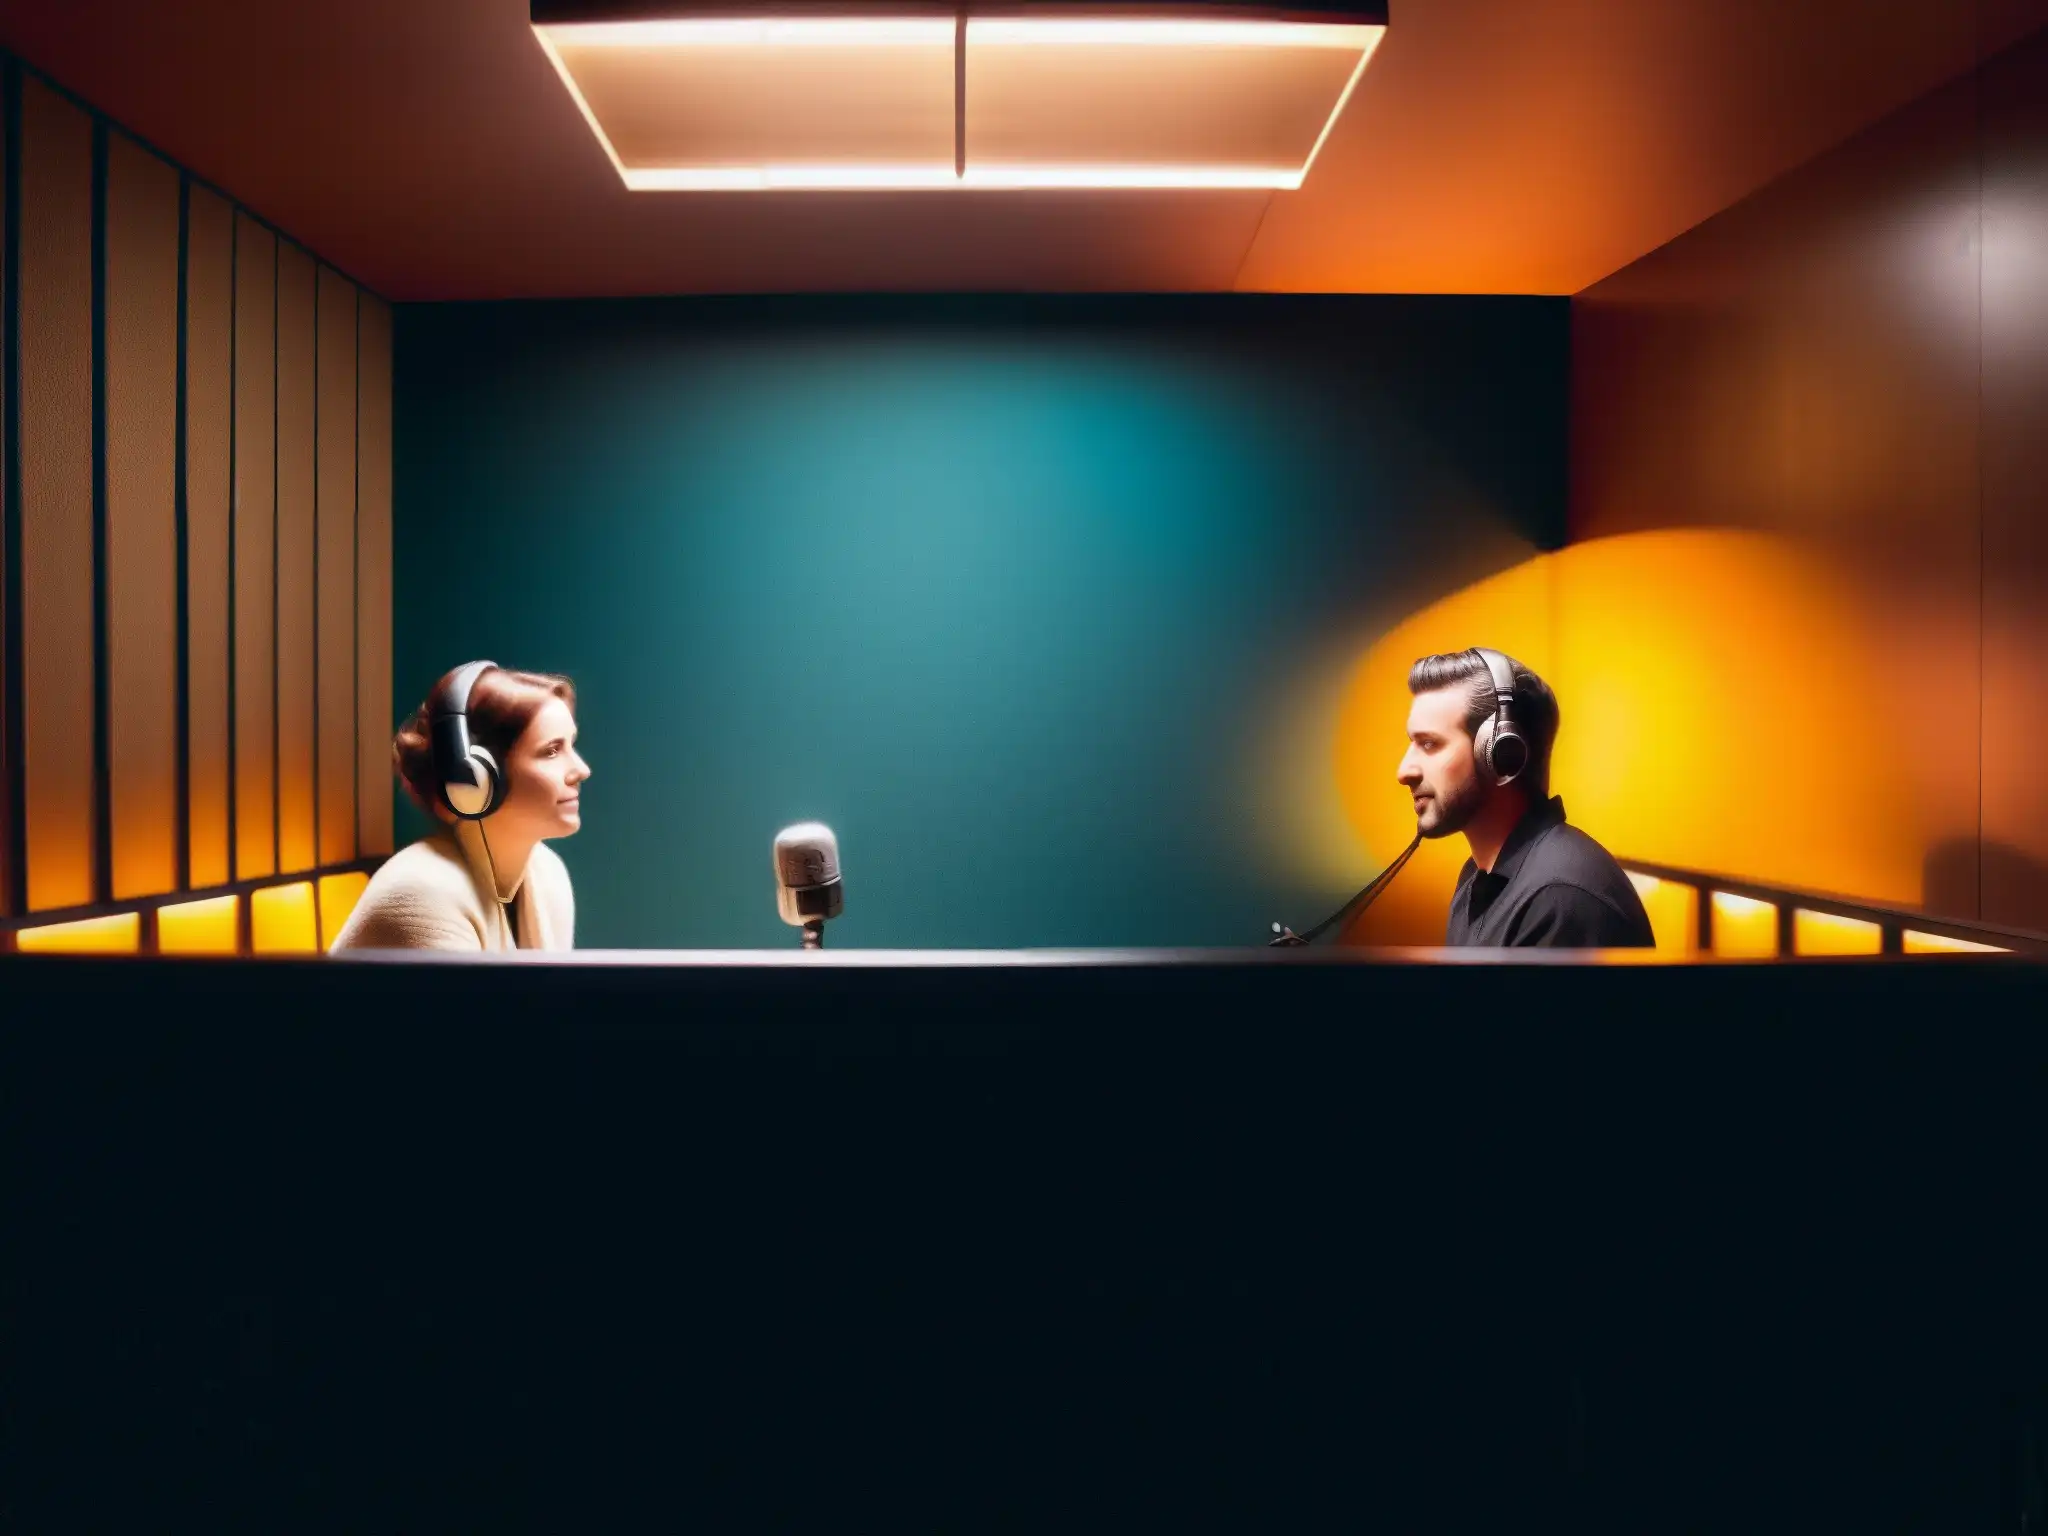 En un estudio de grabación sombrío, dos personas conversan